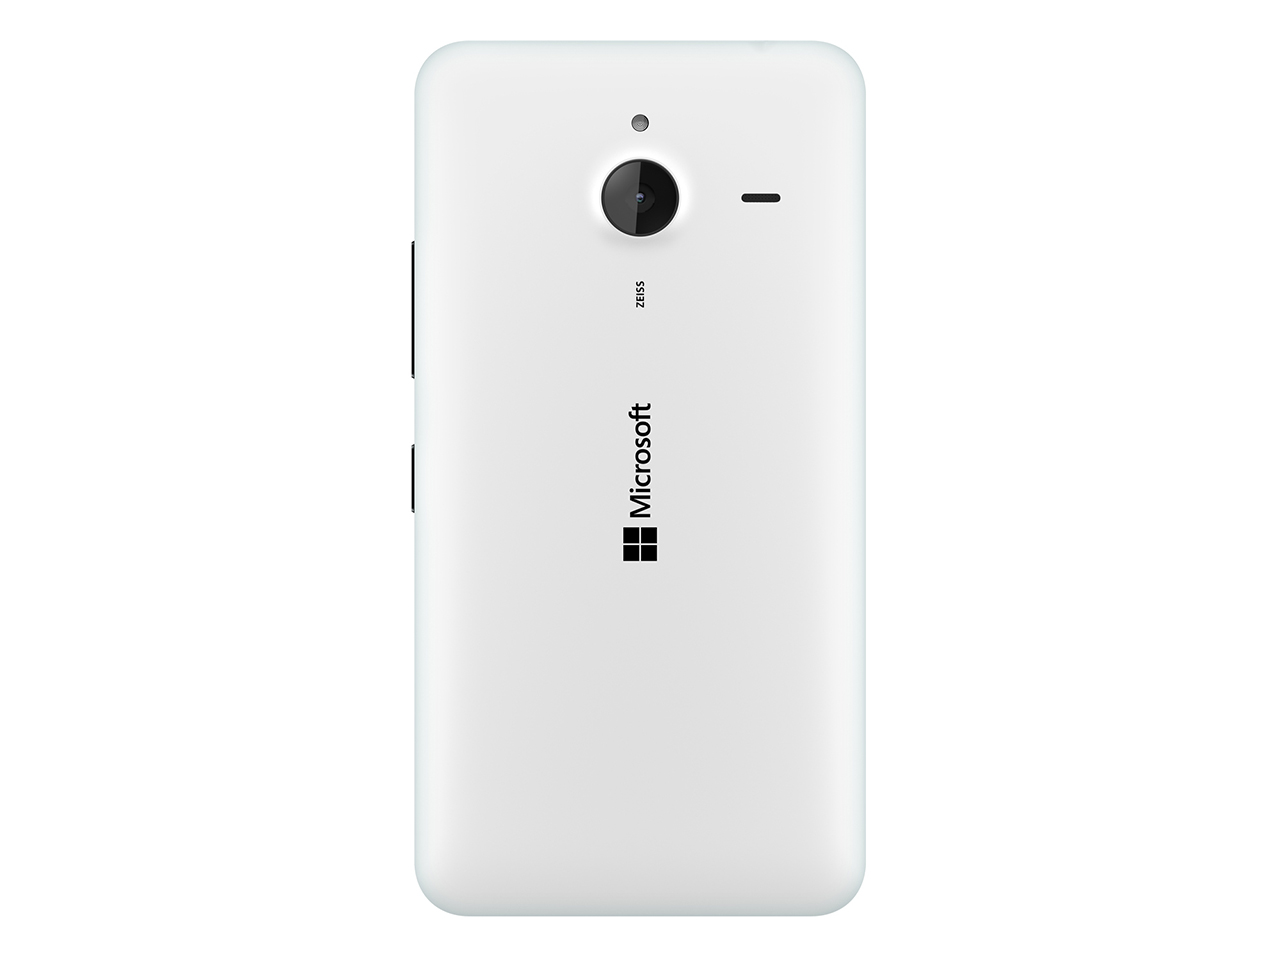 Lumia 640 XL rear view